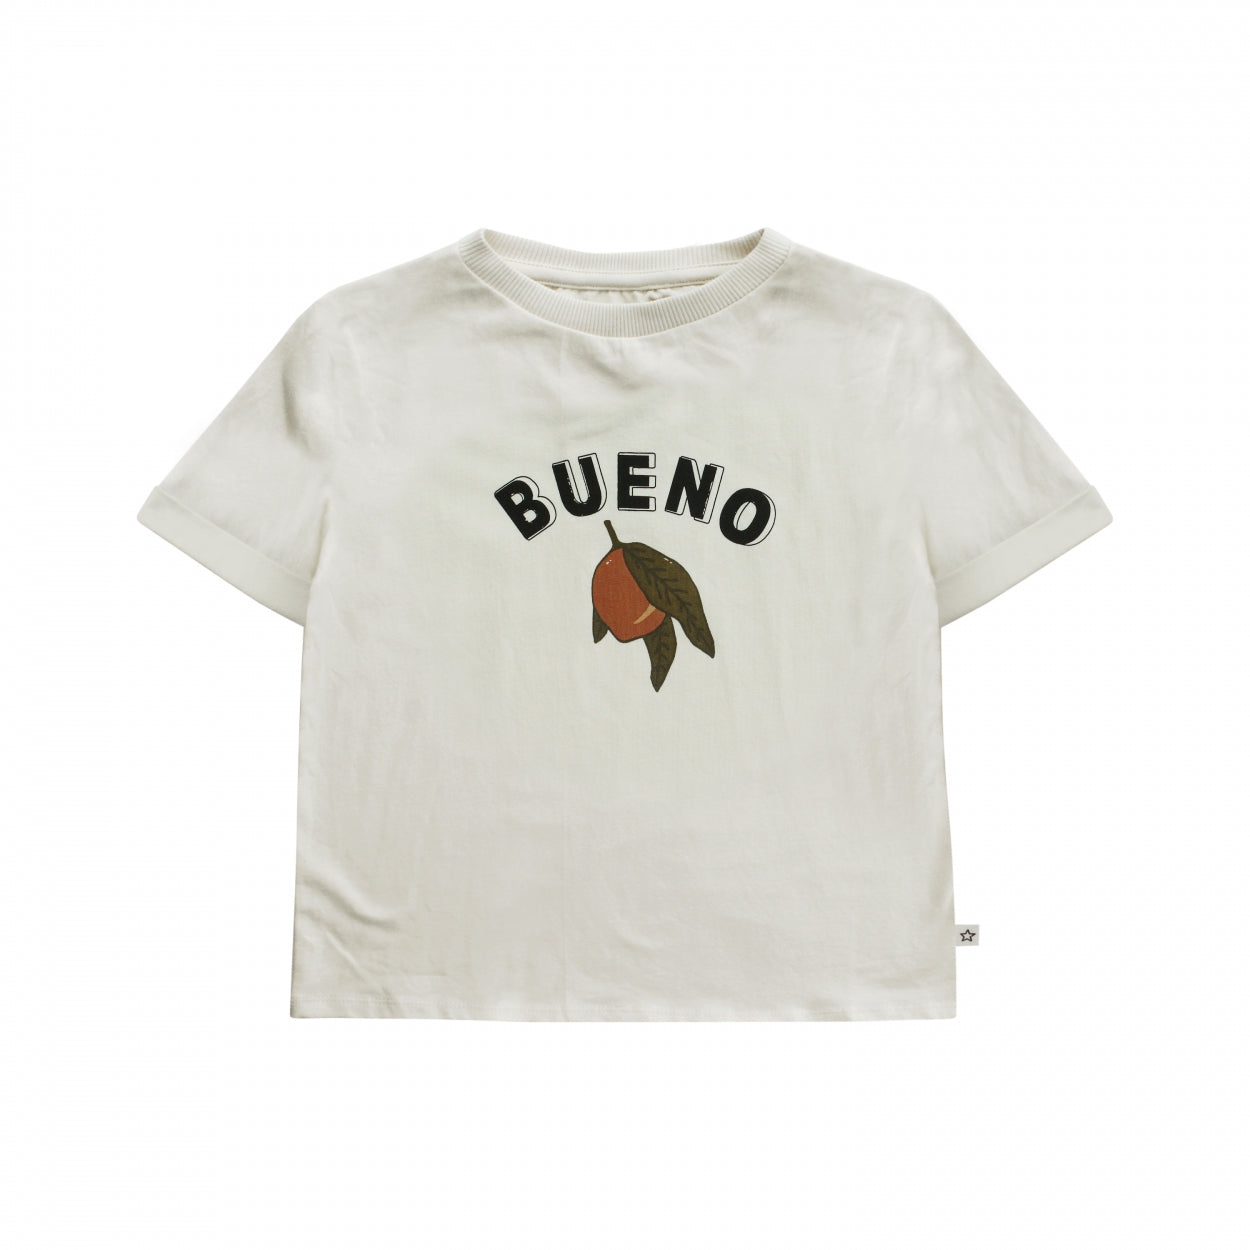 Meisjes T-Shirt Bueno | Angie van Your Wishes in de kleur Ivory in maat 134/140.